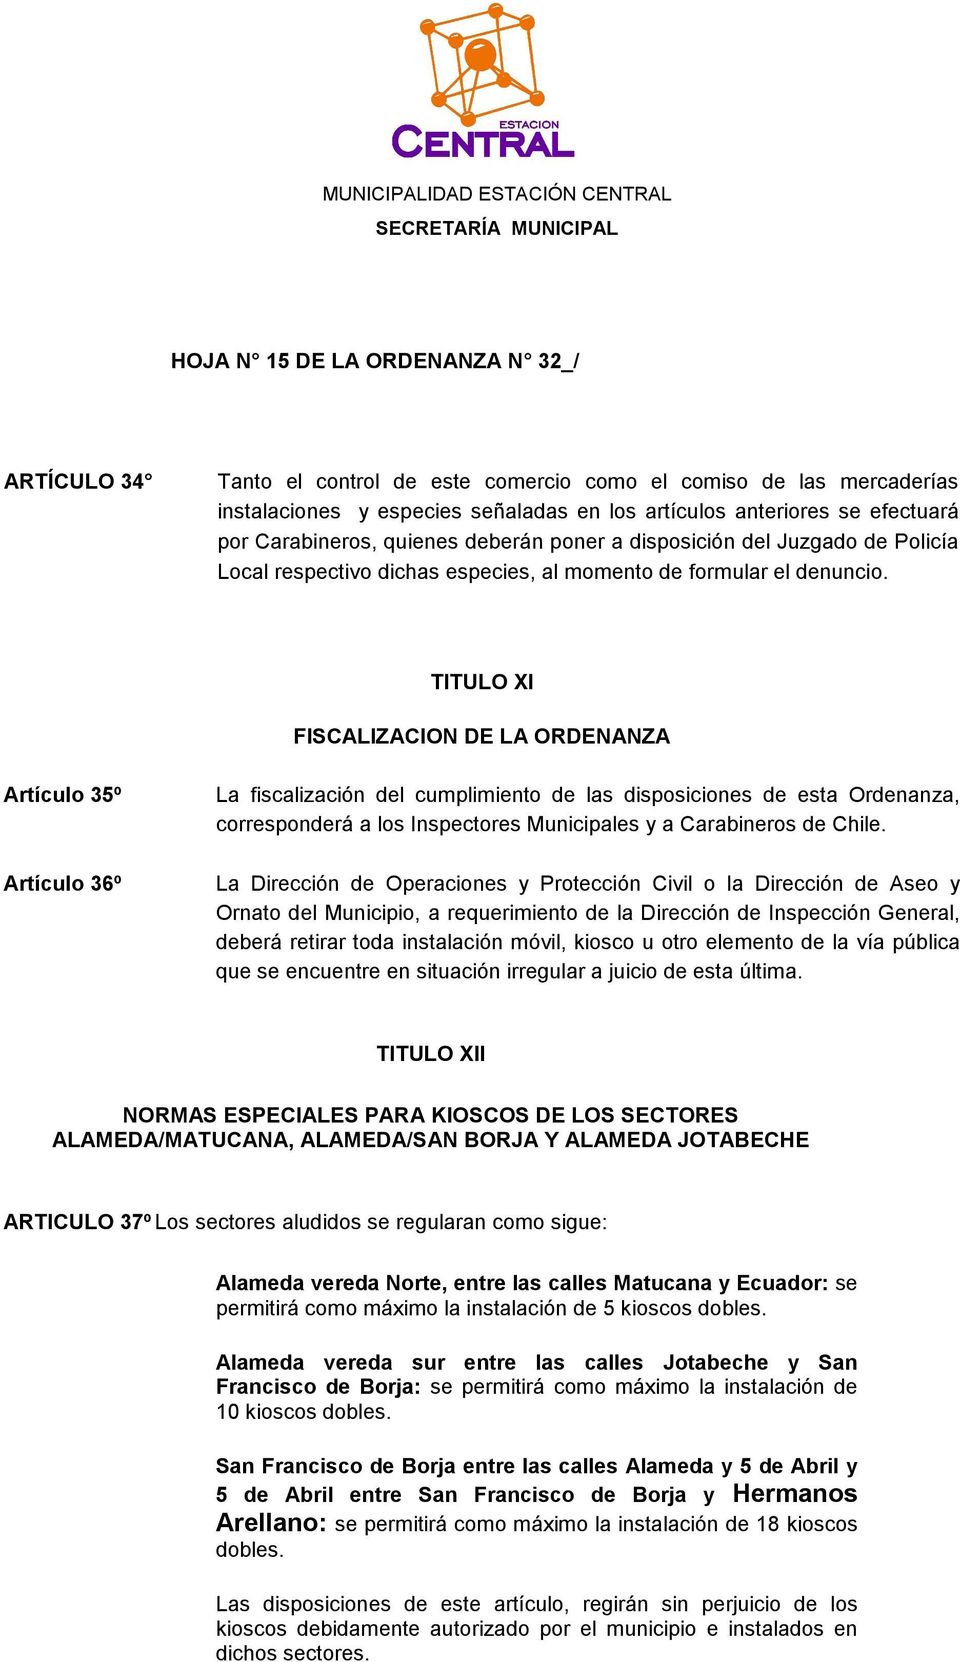 TITULO XI FISCALIZACION DE LA ORDENANZA Artículo 35º Artículo 36º La fiscalización del cumplimiento de las disposiciones de esta Ordenanza, corresponderá a los Inspectores Municipales y a Carabineros